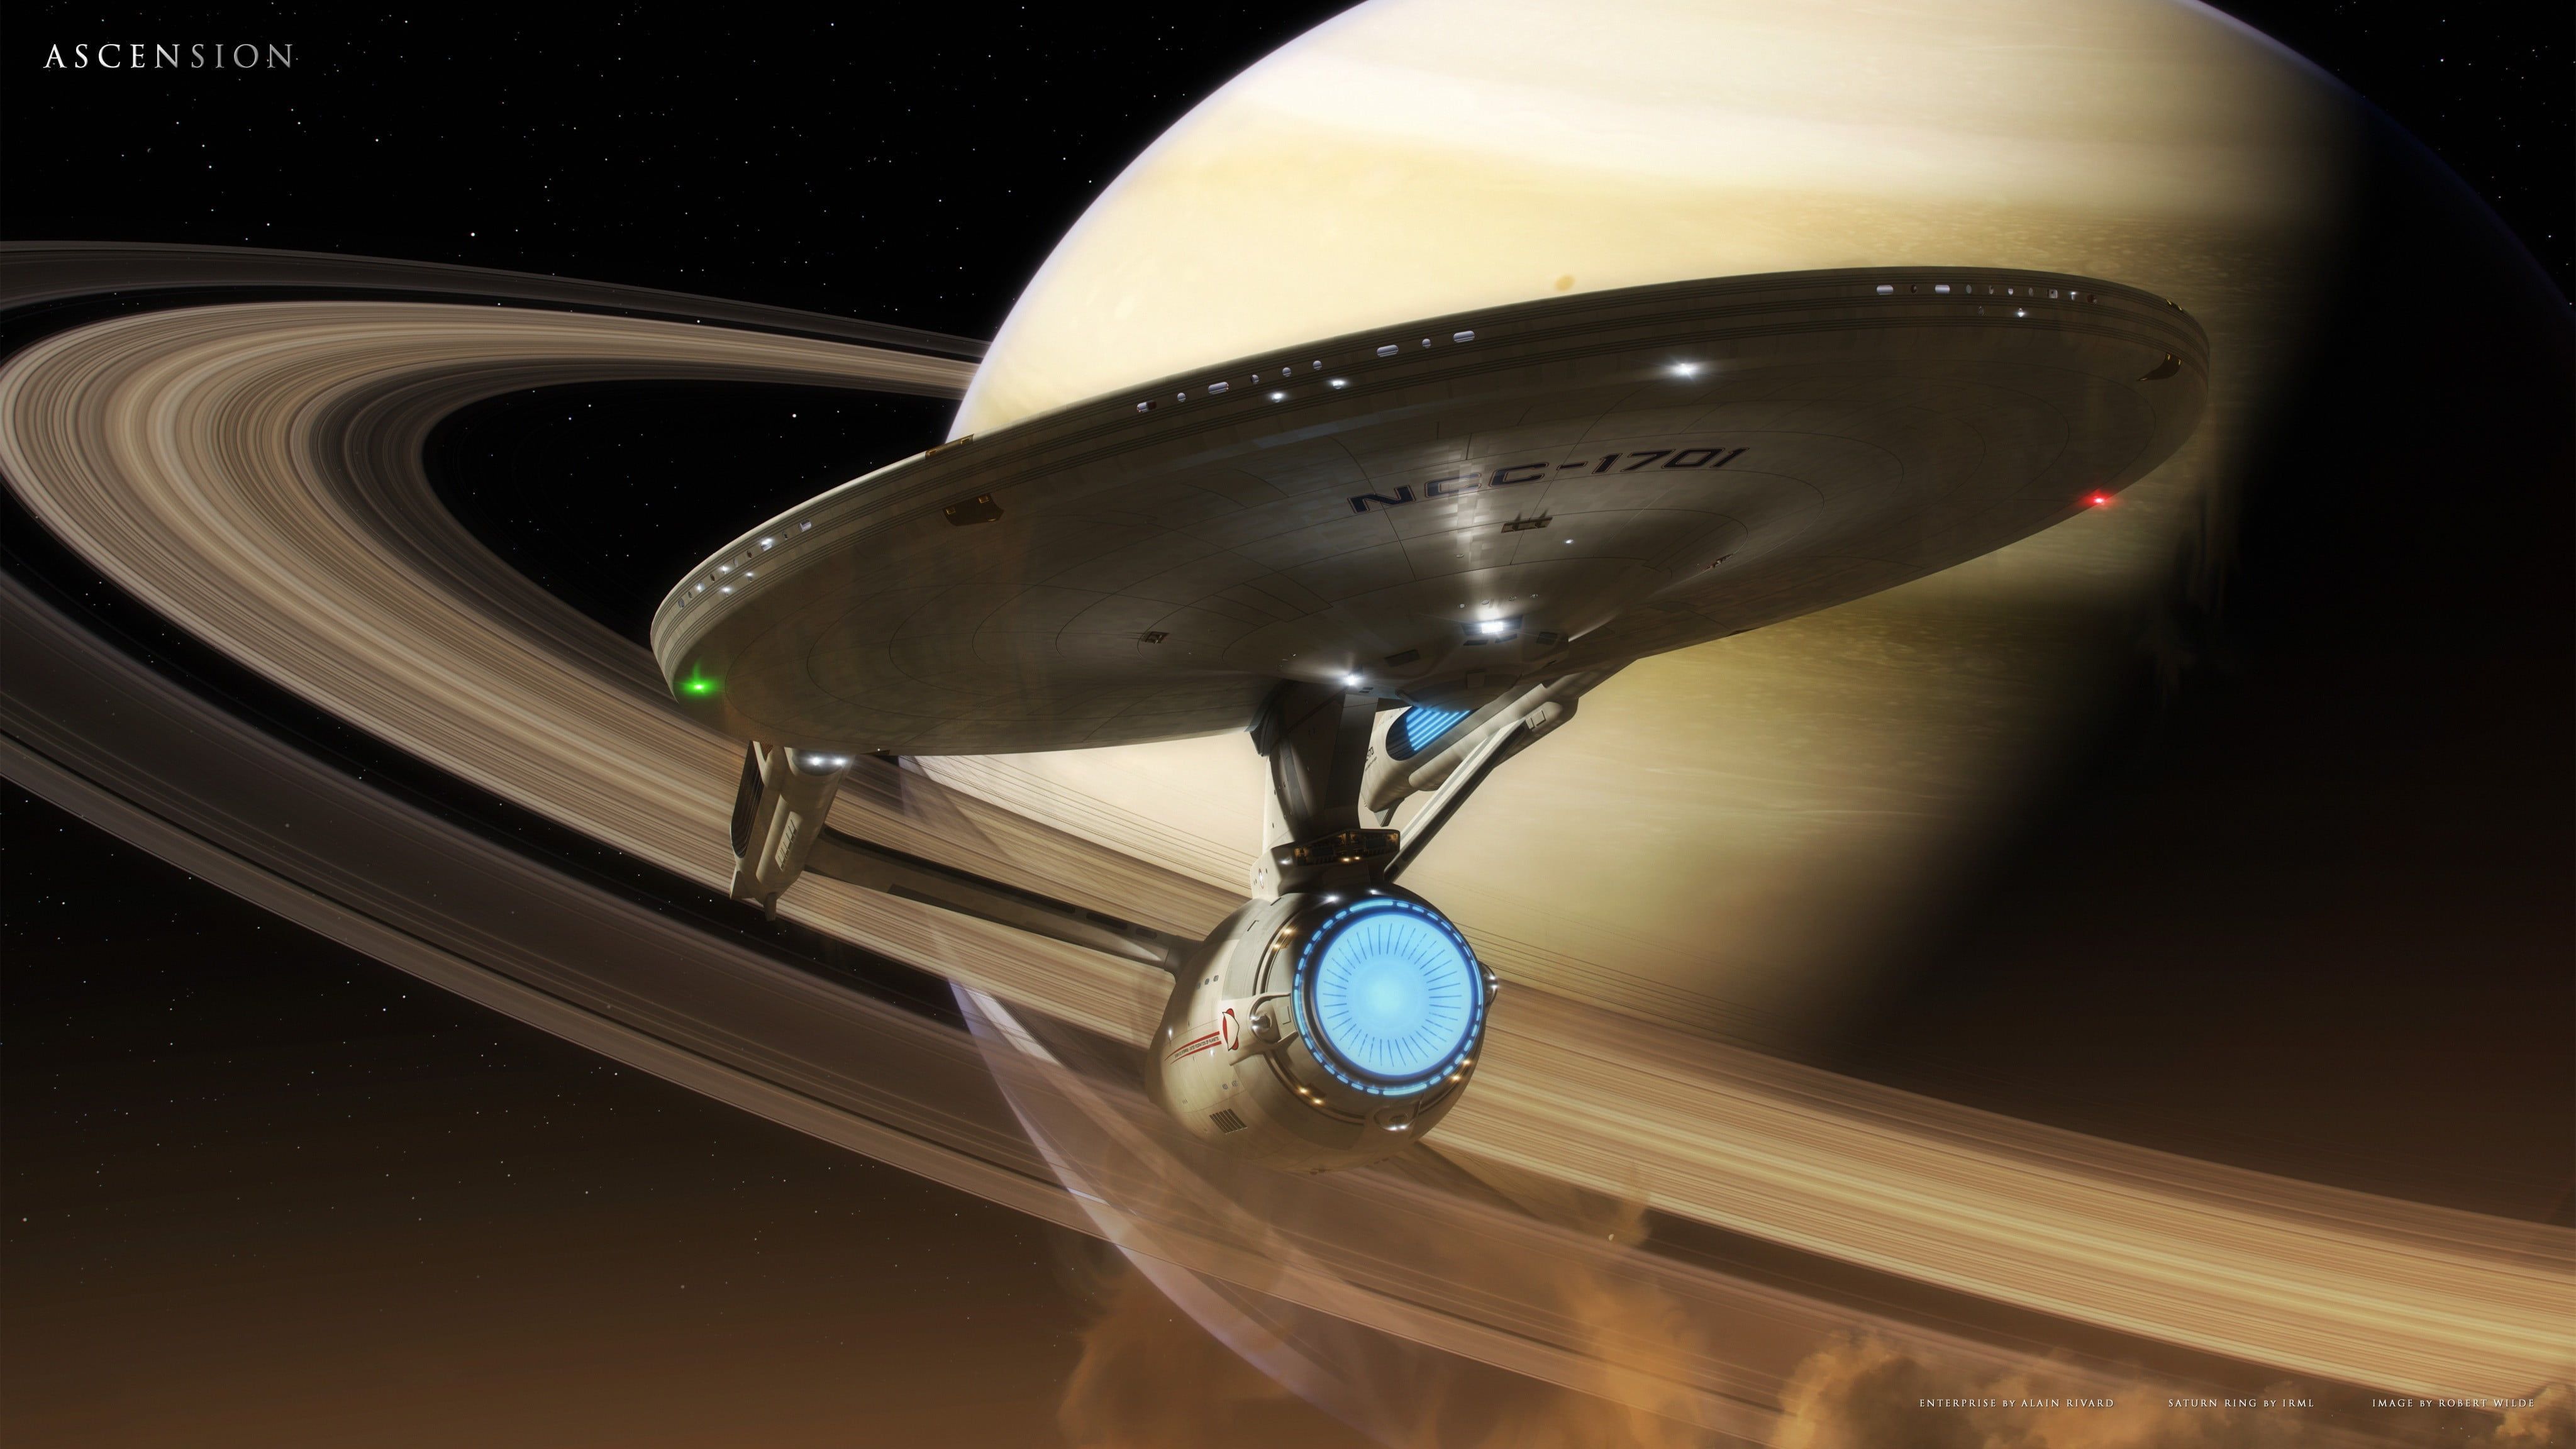 Star Trek USS Enterprise #space Star Trek #spaceship USS Enterprise (spaceship) K #wallpaper #hdwallpa. Star trek wallpaper, Uss enterprise star trek, Star trek